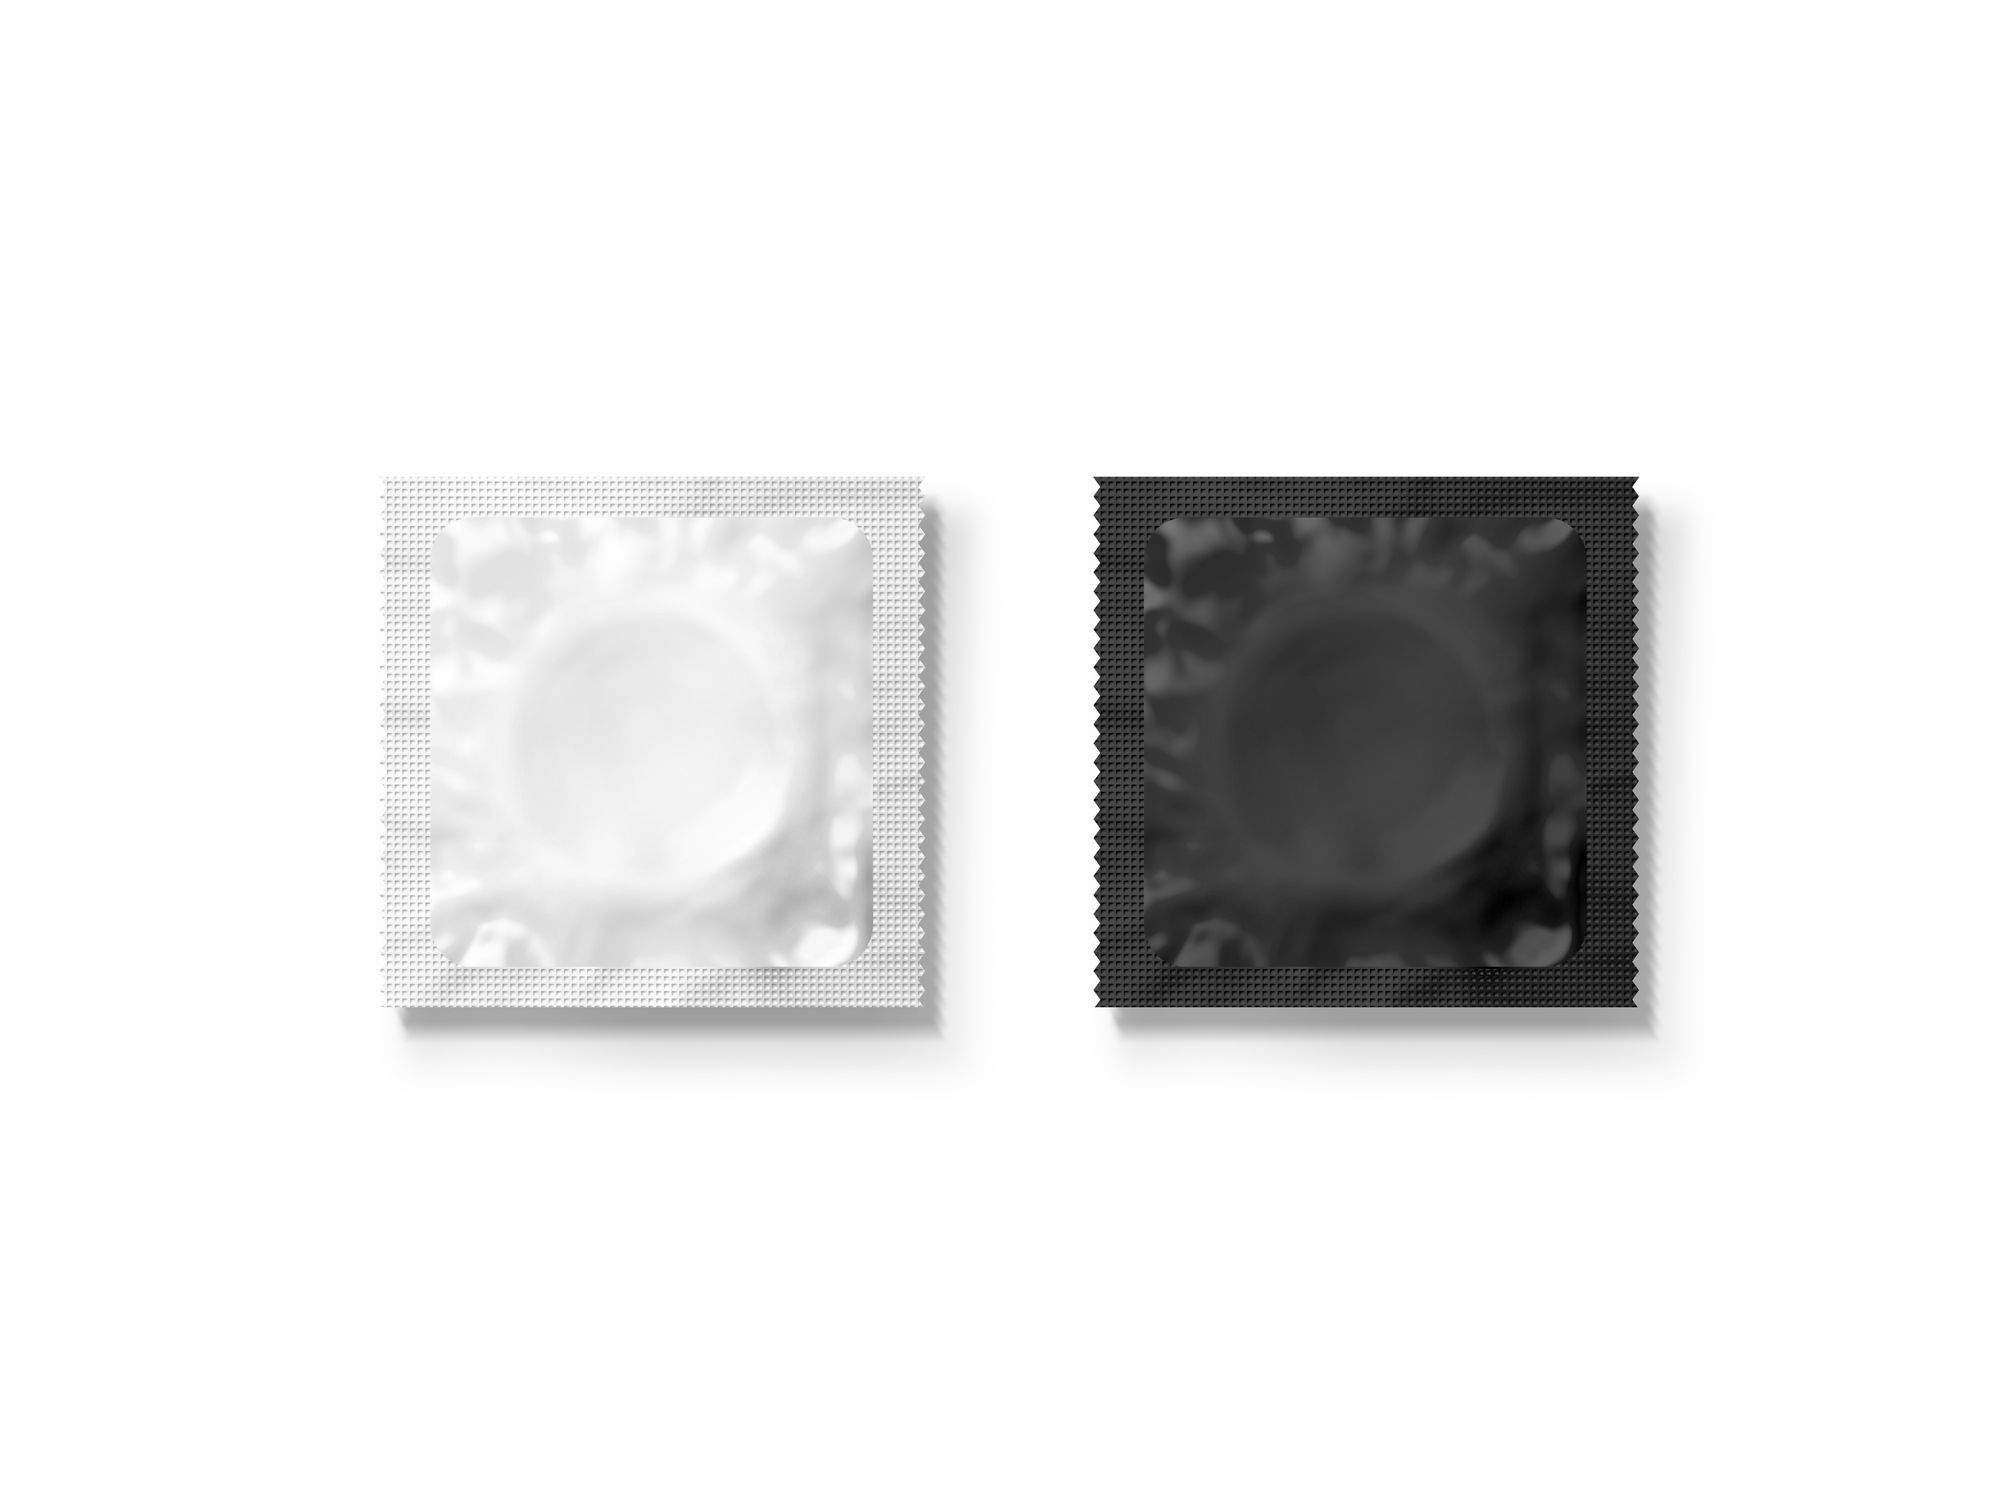 Noppen Kondom - Abbildung eines weißen und eines schwarzen Kondoms, welche verschlossen nebeneinander auf einer weißen Unterlage liegen.